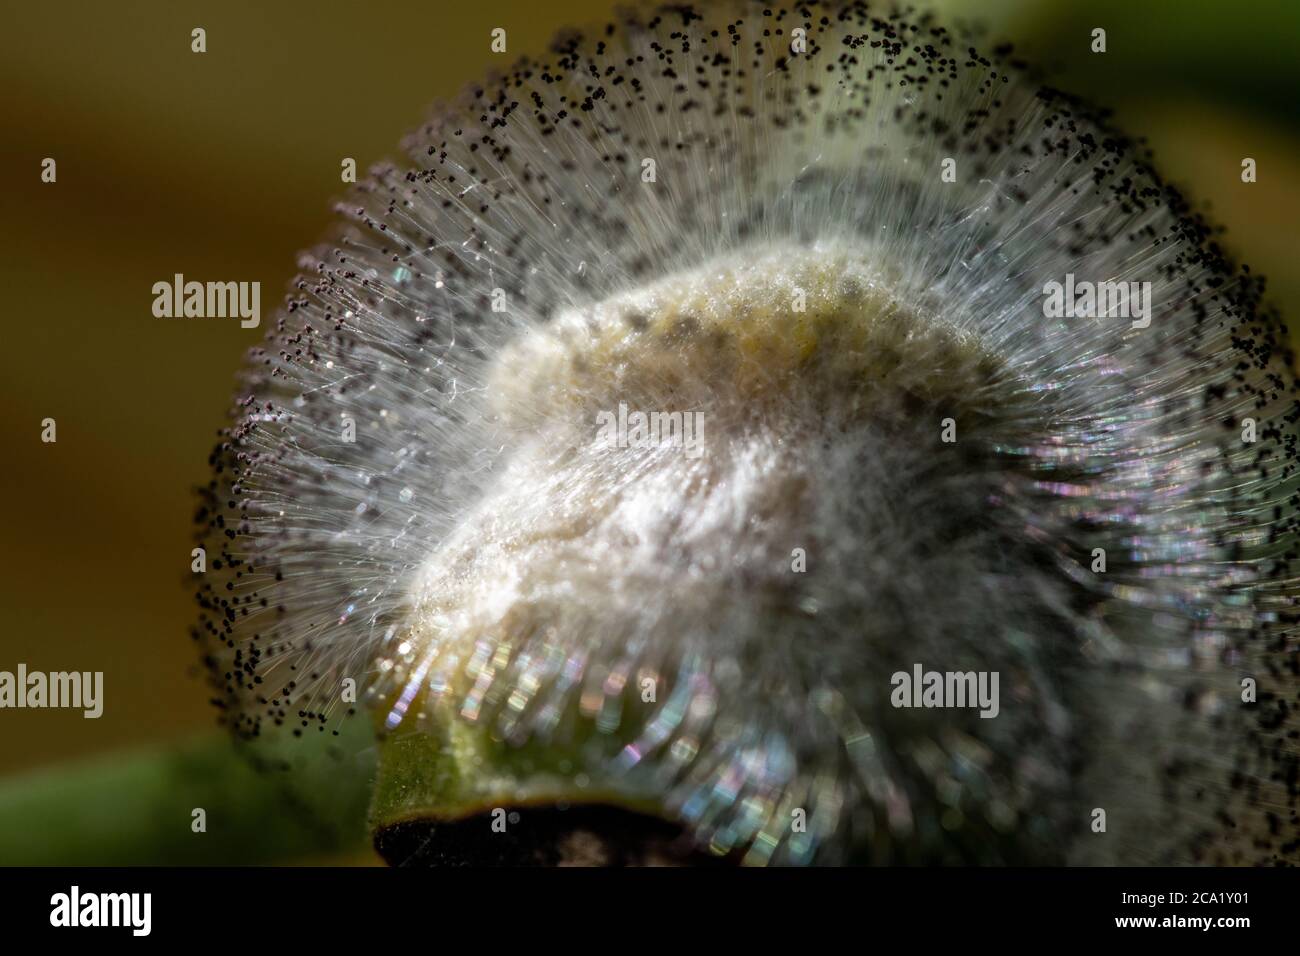 Squashblütenfäule wächst auf einer jungen Butterblume Squashfrucht. Stockfoto